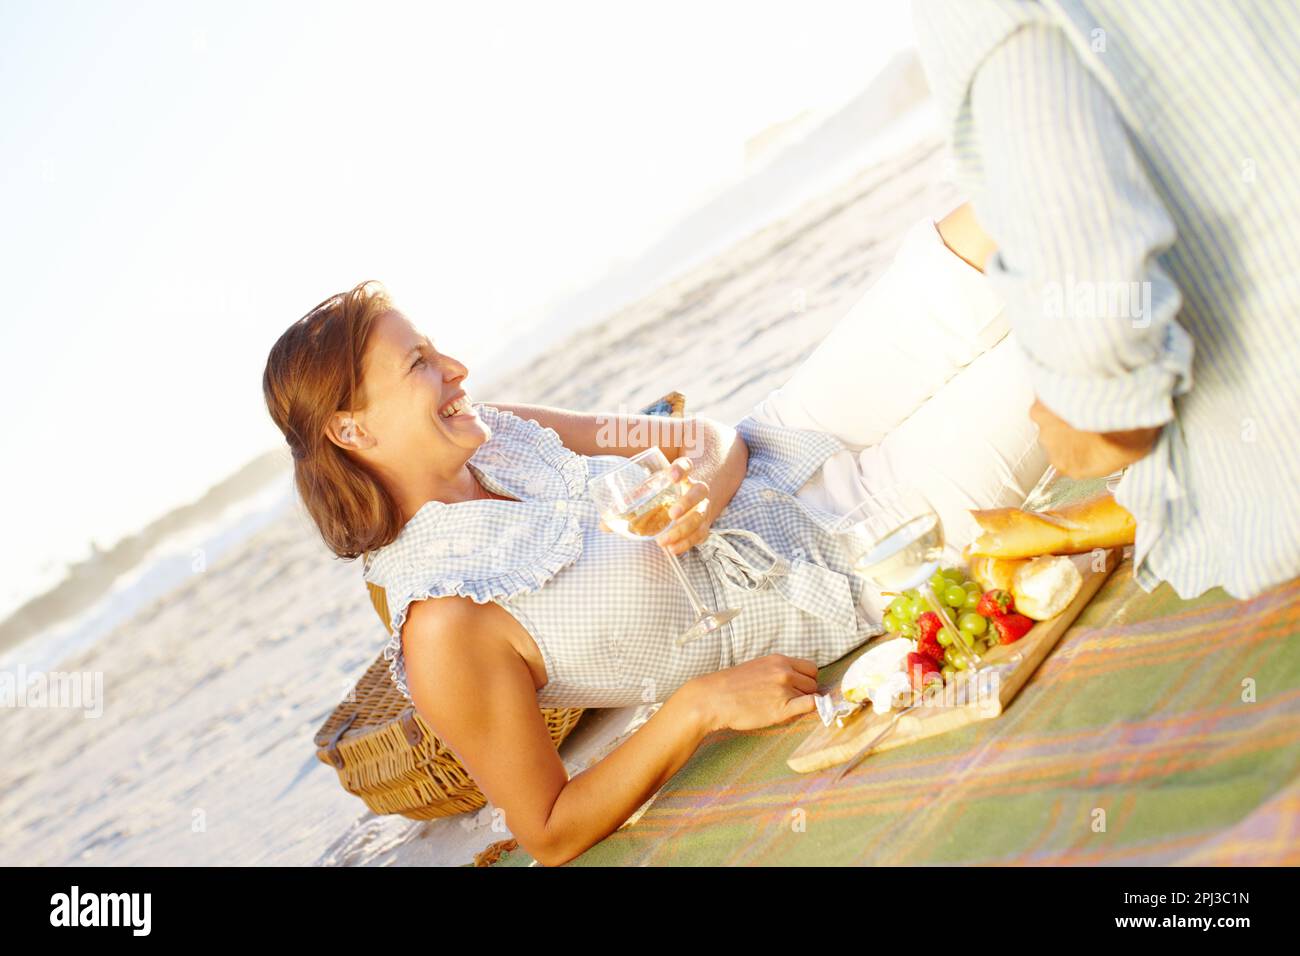 Vin et pique-nique romantique. Une heureuse femme mûre se détendant sur une  couverture de pique-nique et appréciant le coucher du soleil avec son mari  Photo Stock - Alamy